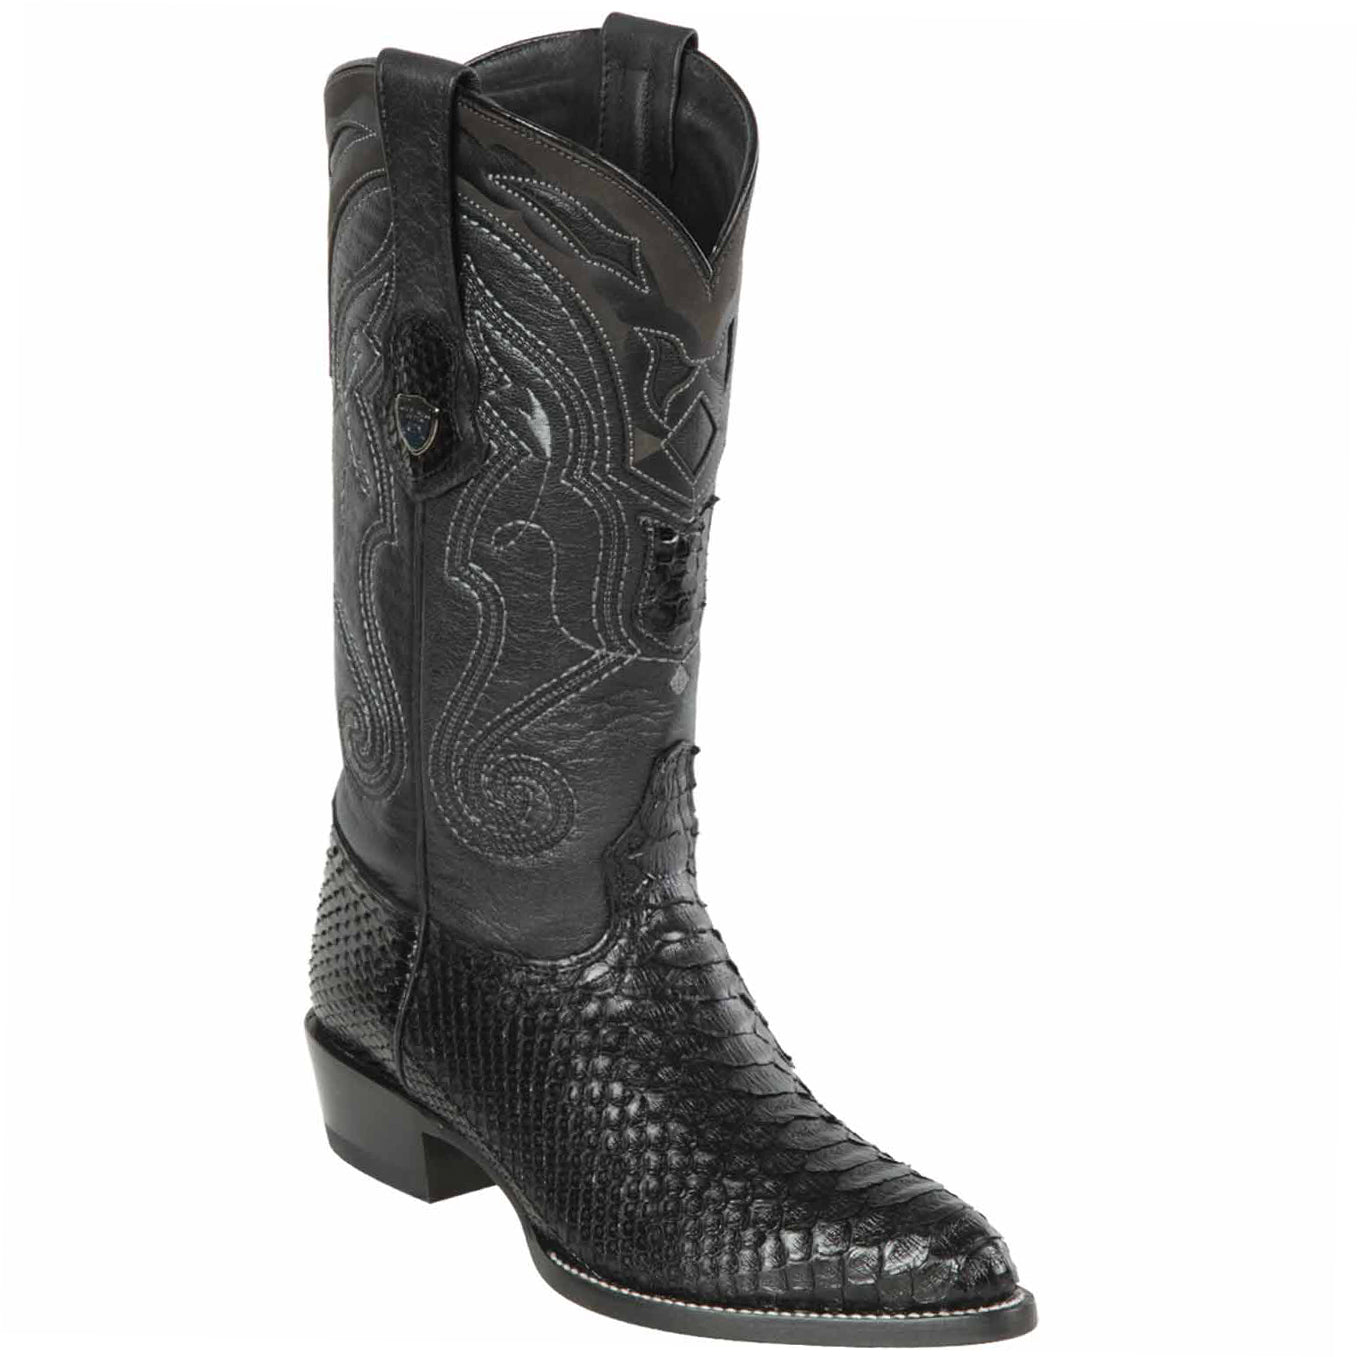 Wild West Boots - Black Python Cowboy Boots J-Toe